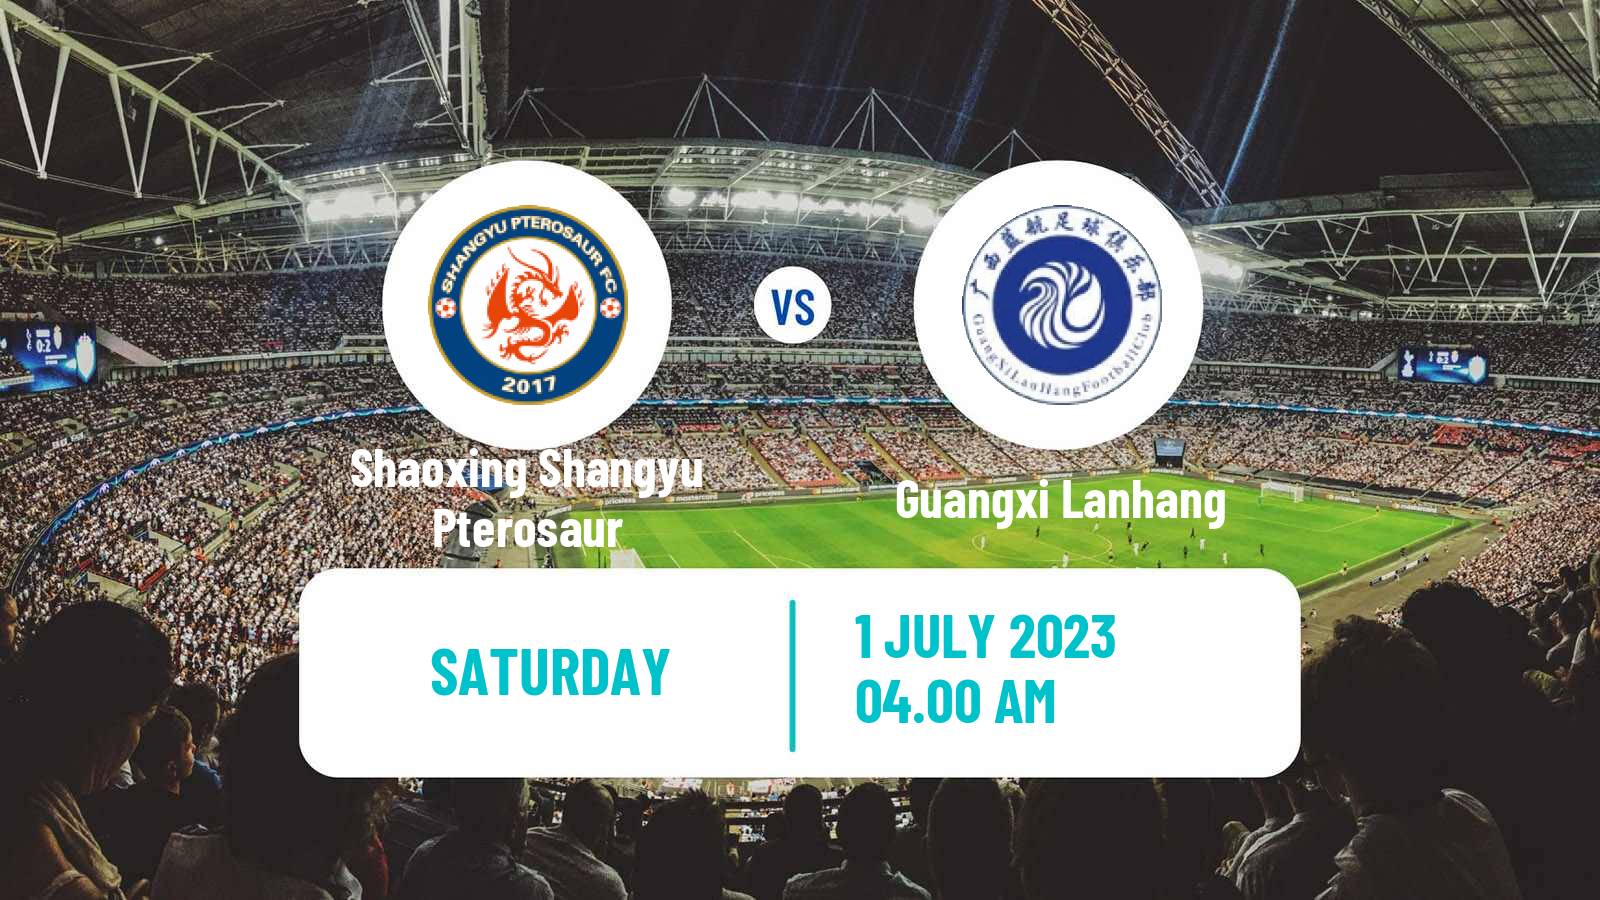 Soccer Chinese Yi League Shaoxing Shangyu Pterosaur - Guangxi Lanhang